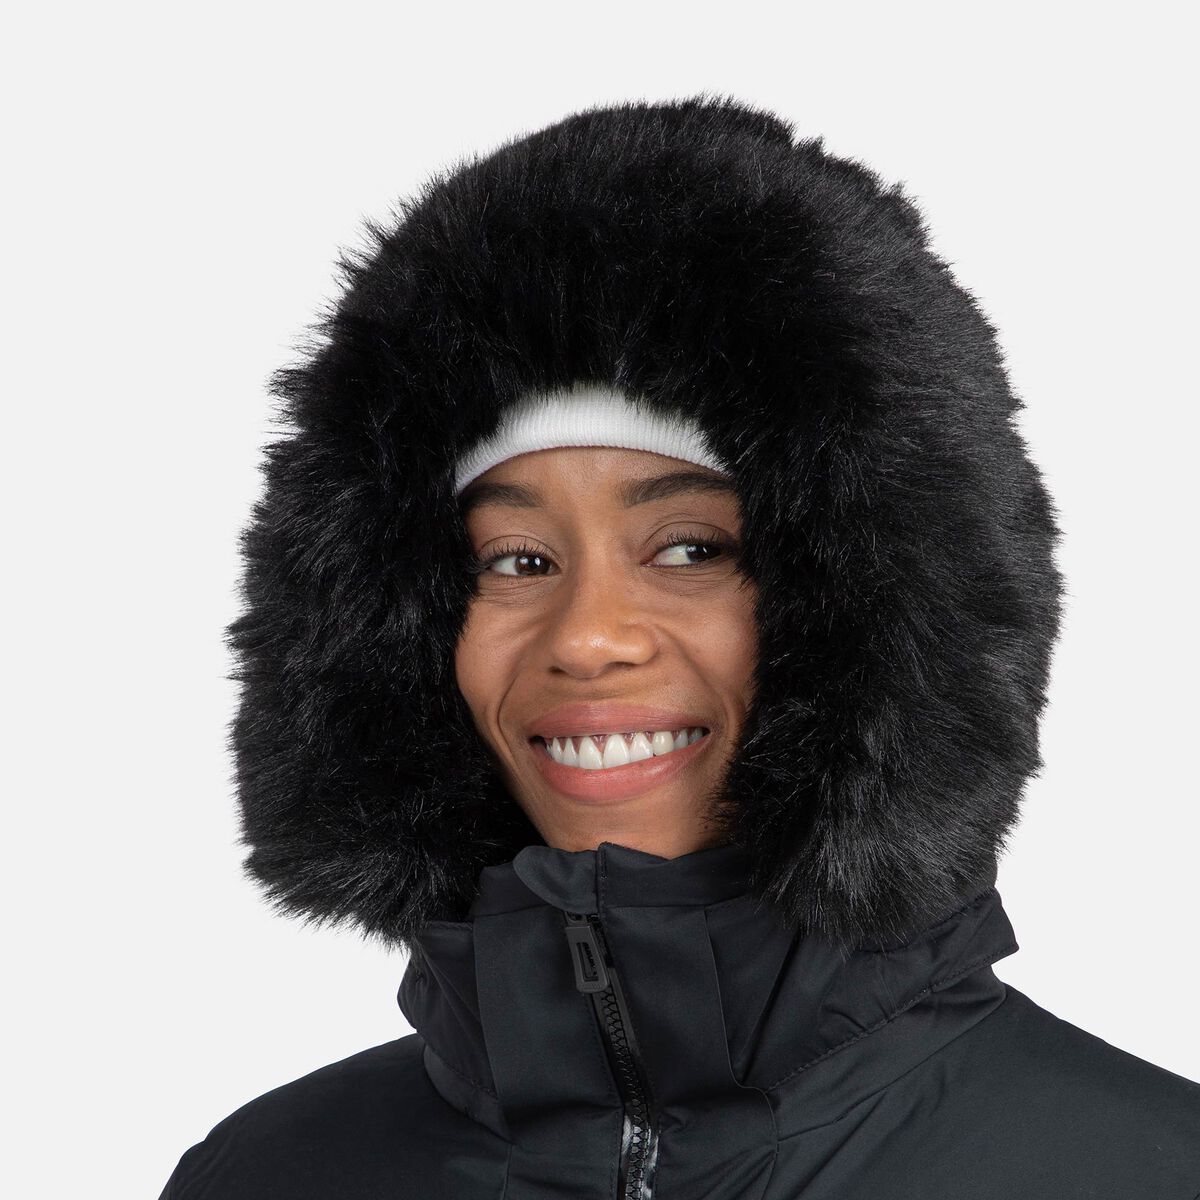 Veste ski femme Rossignol Depart Jacket Femme black 2023 Chez SportAixTrem